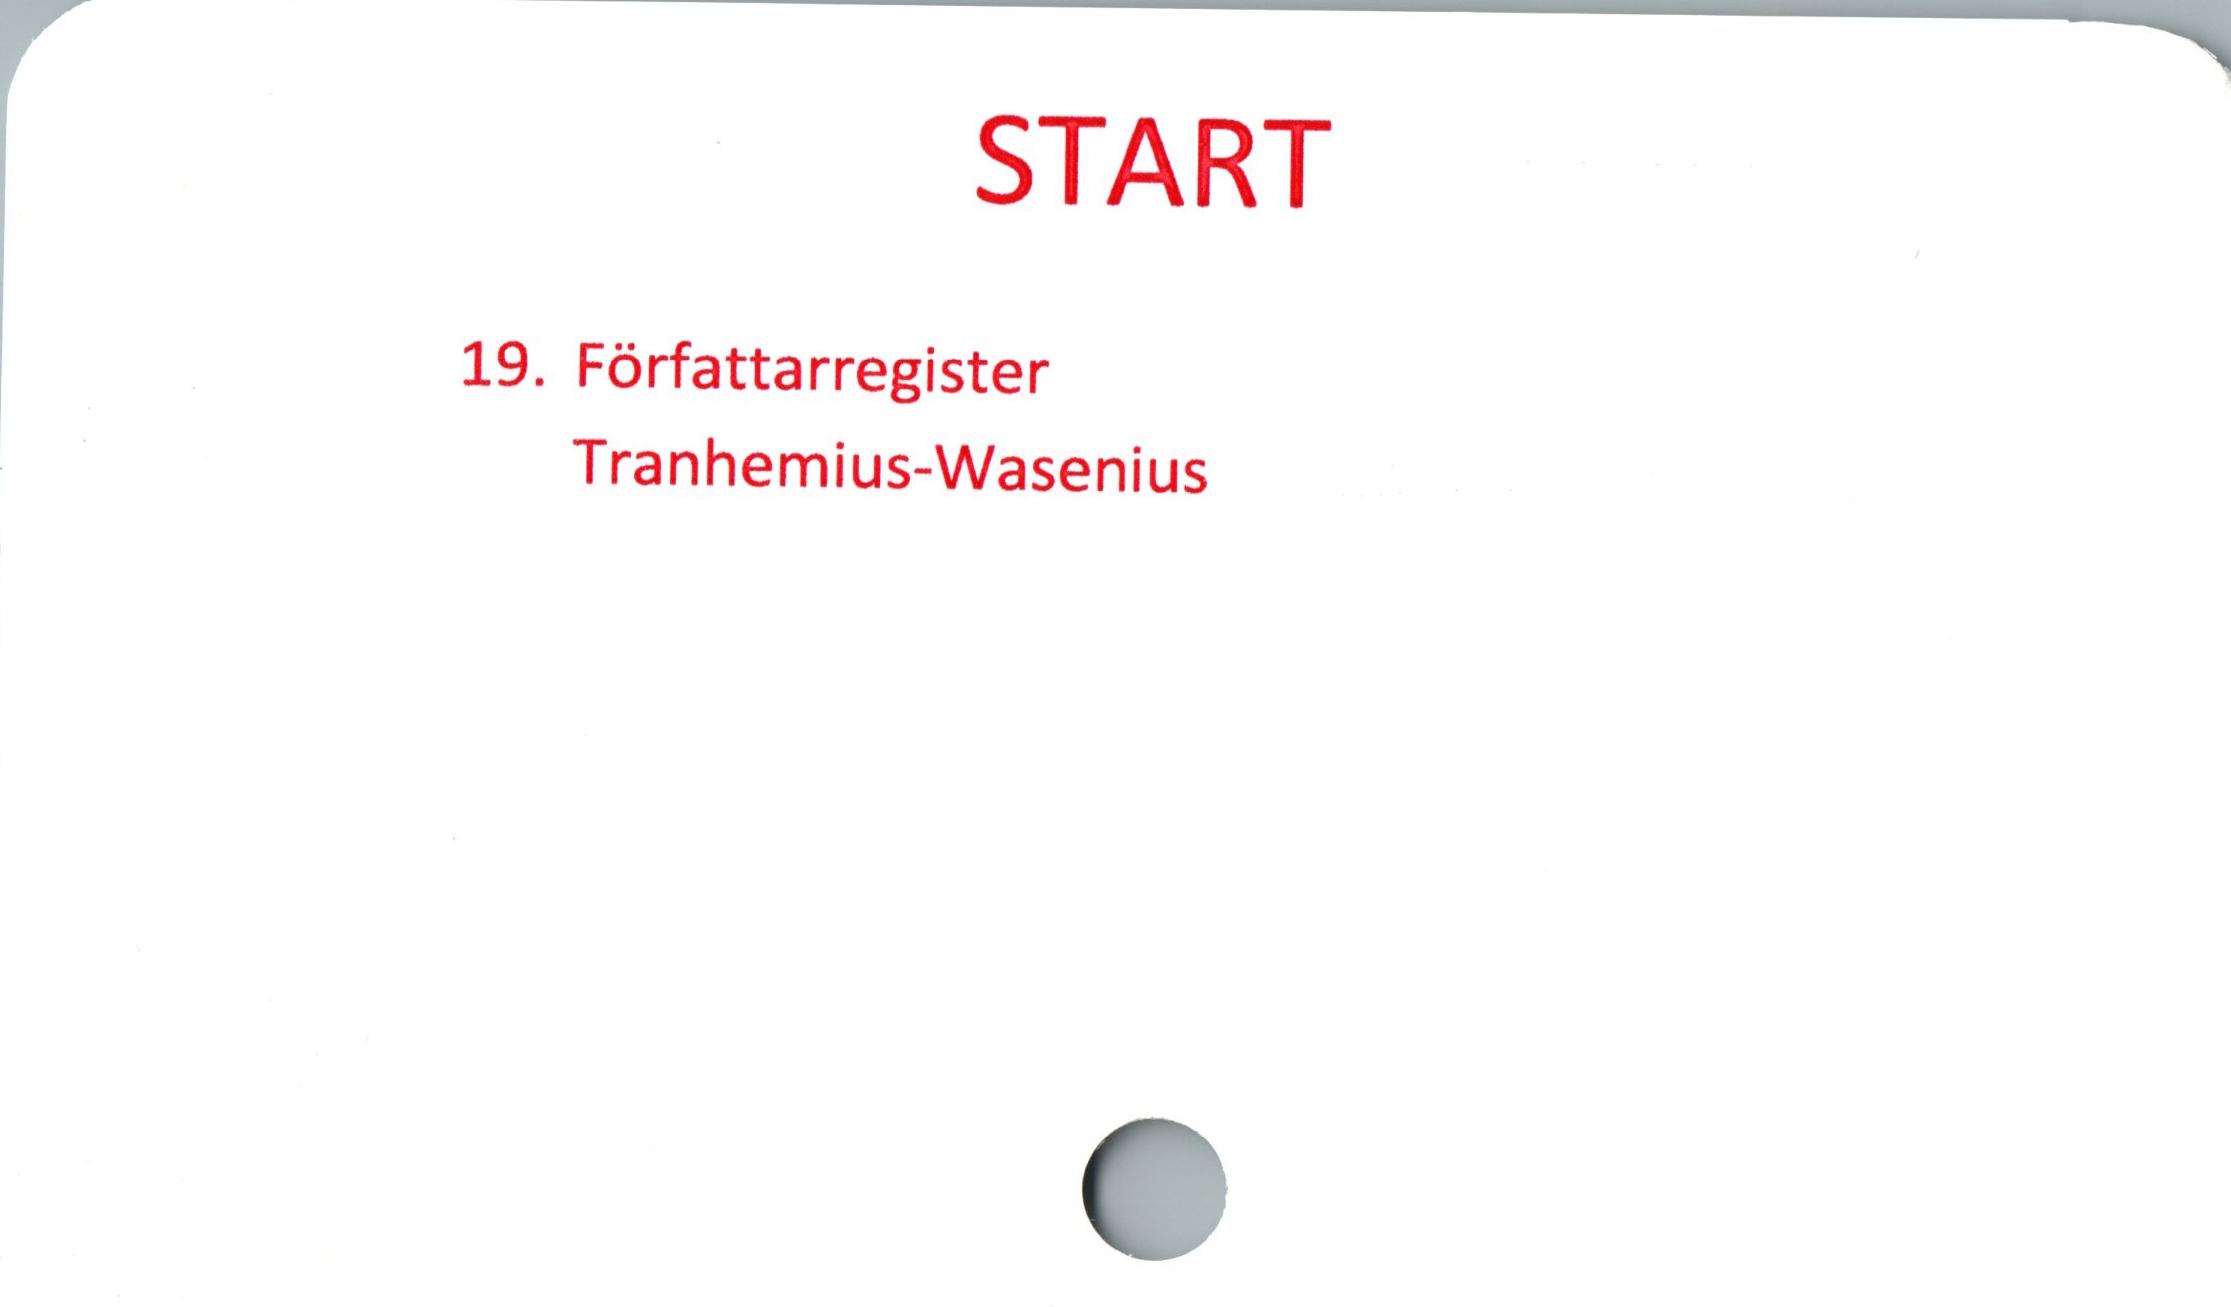  ﻿START

19. Författarregister
Tranhemius-Wasenius